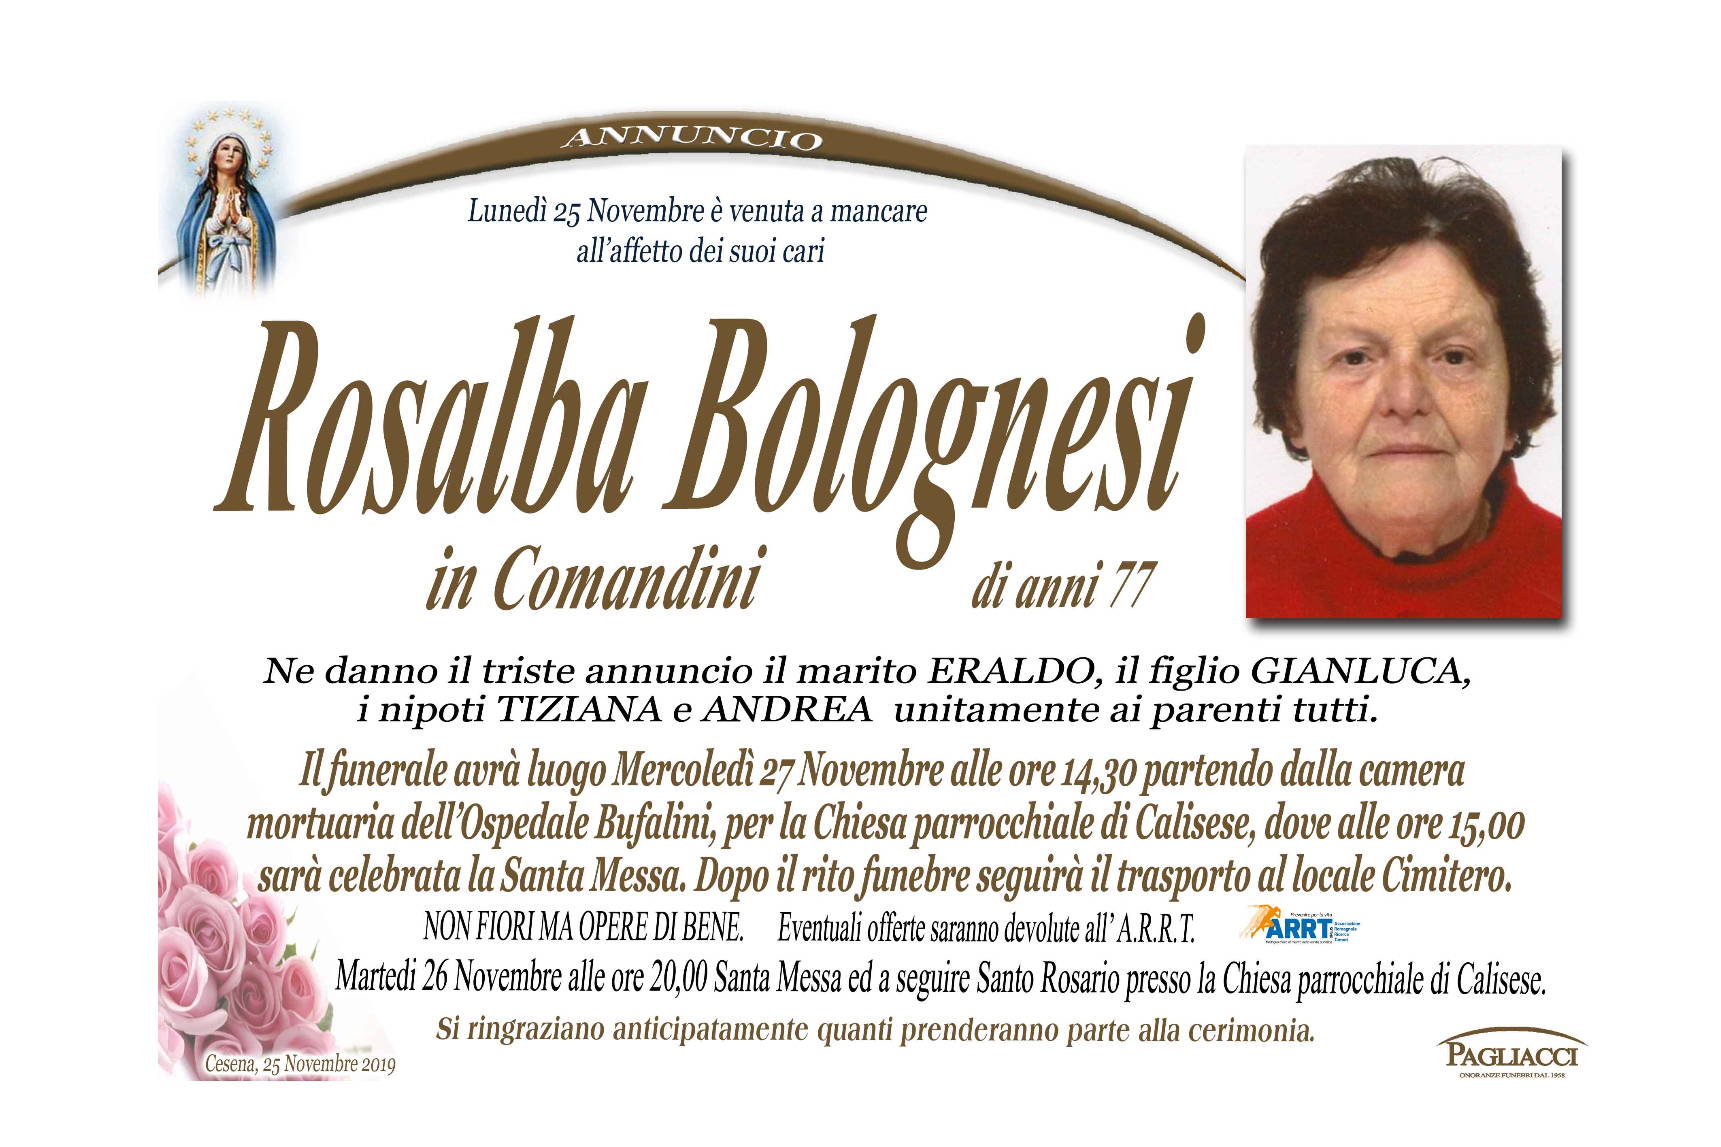 Rosalba Bolognesi